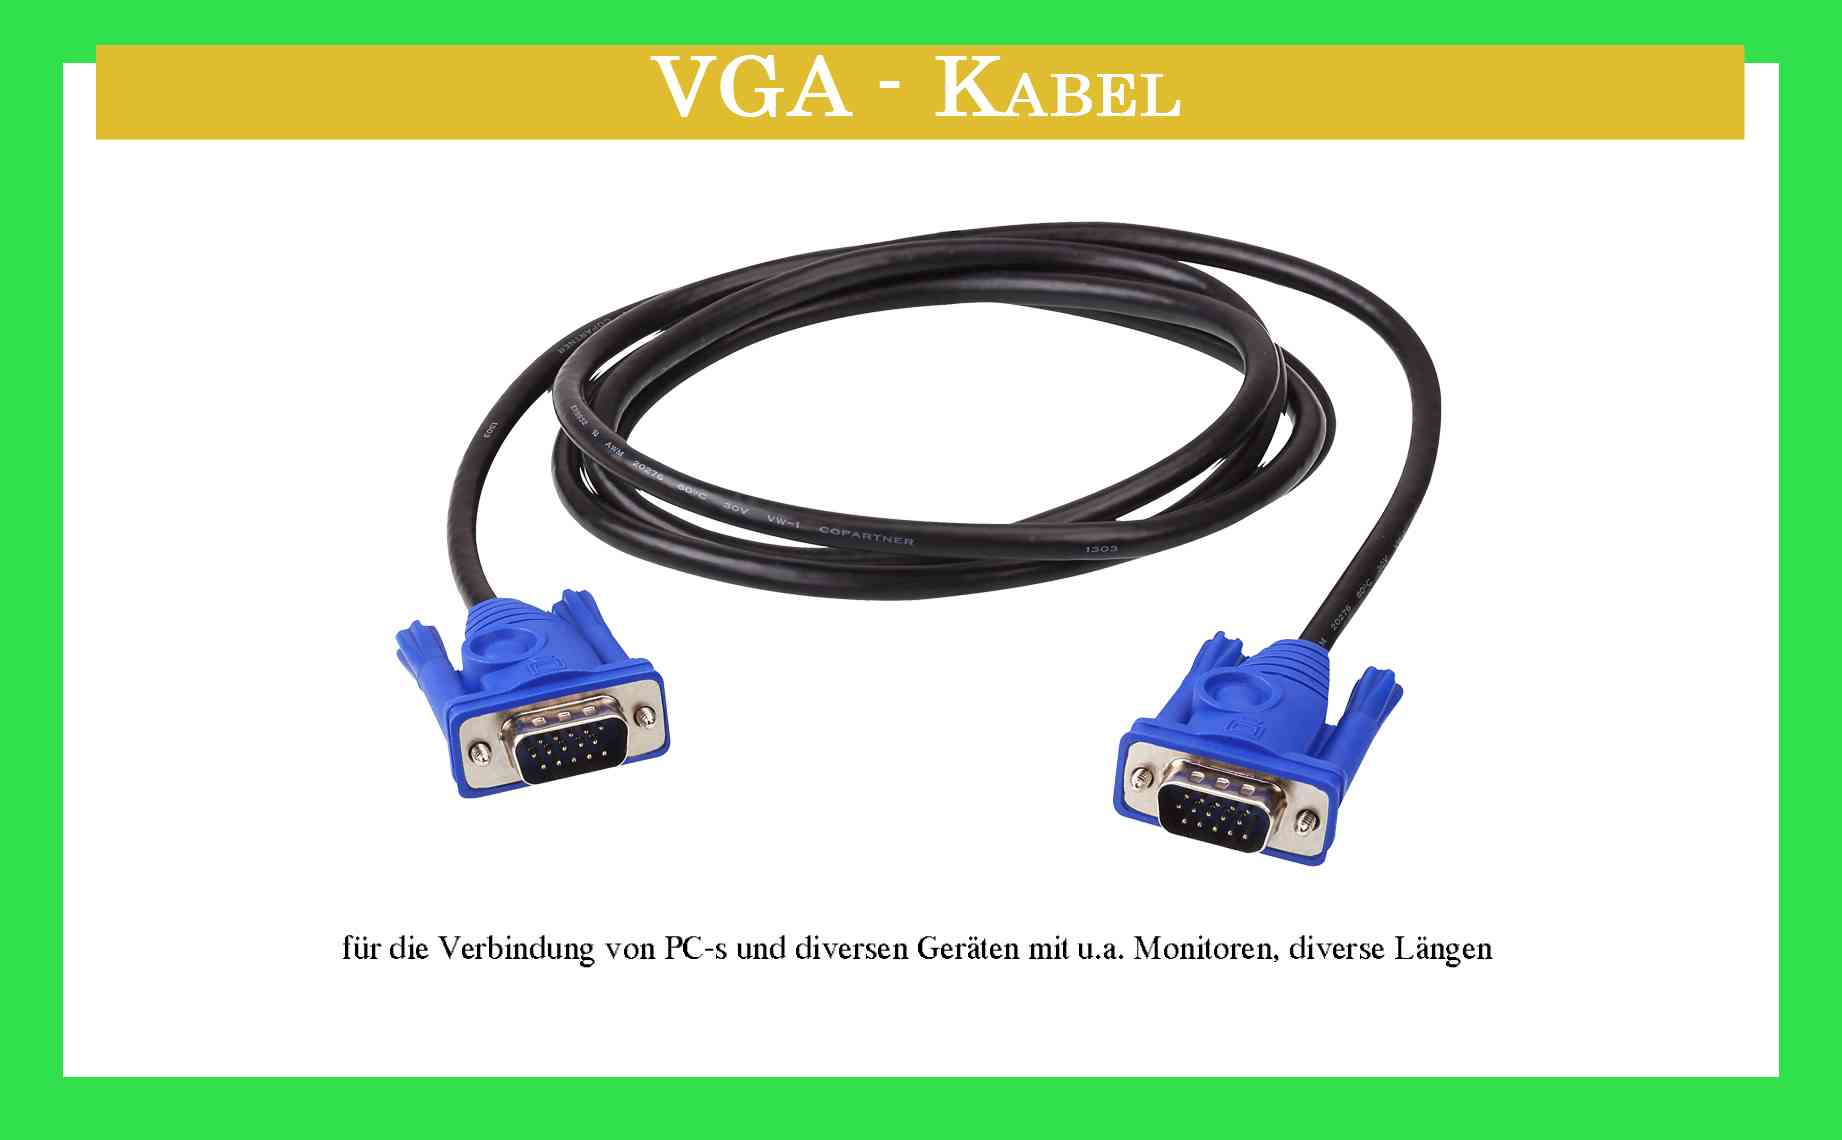 VGA - Kabel